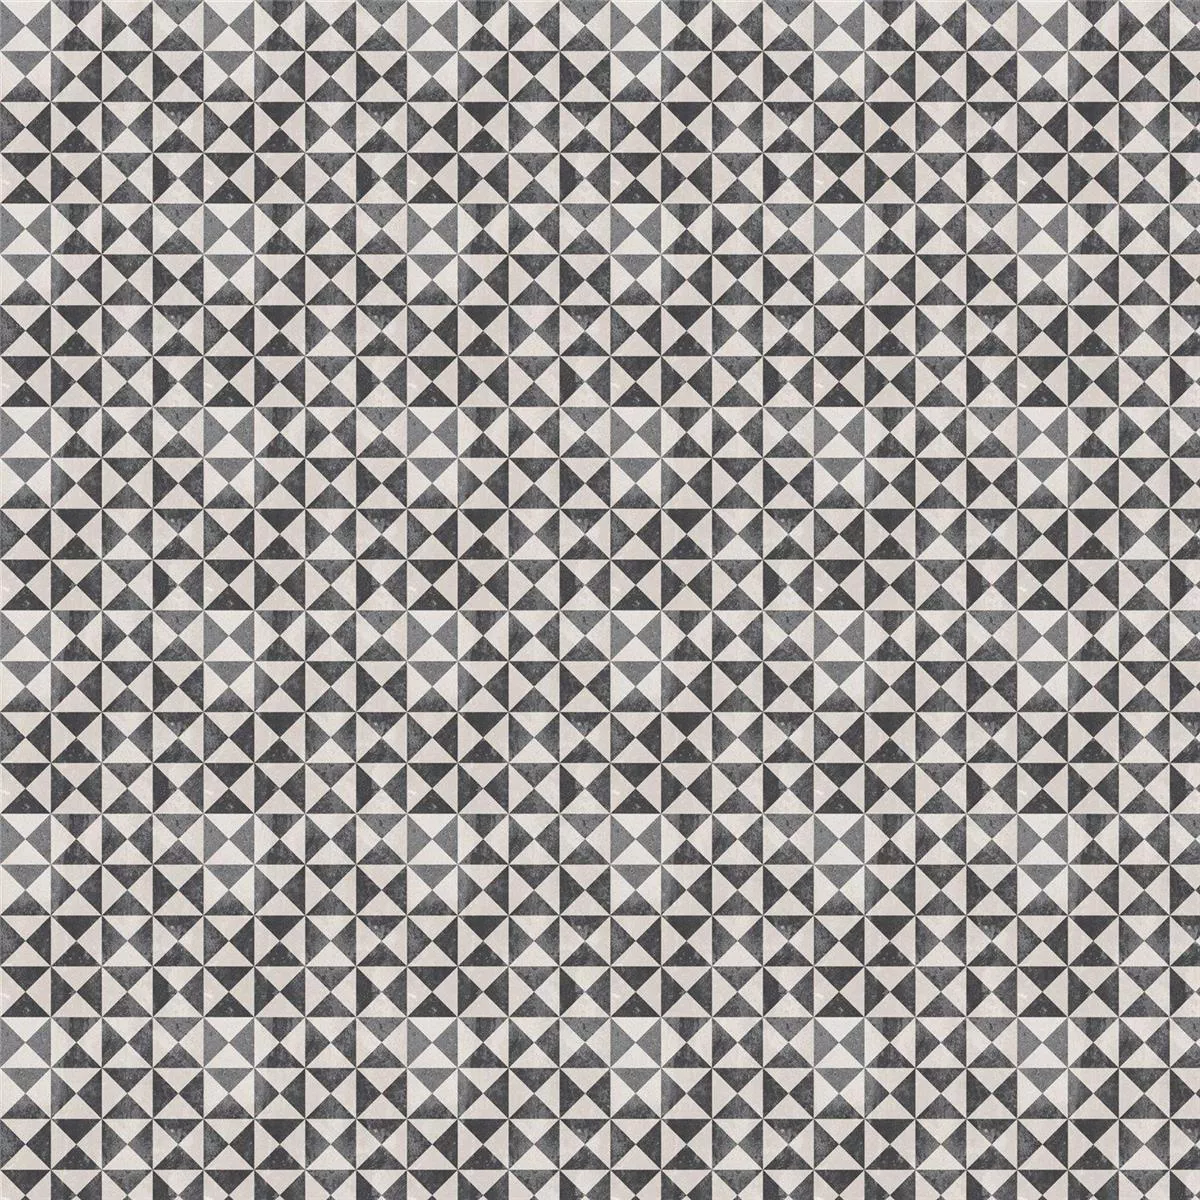 Πρότυπο Πλακάκι Δαπέδου Εμφάνιση Tσιμέντου Toulon Oteiza 18,6x18,6cm